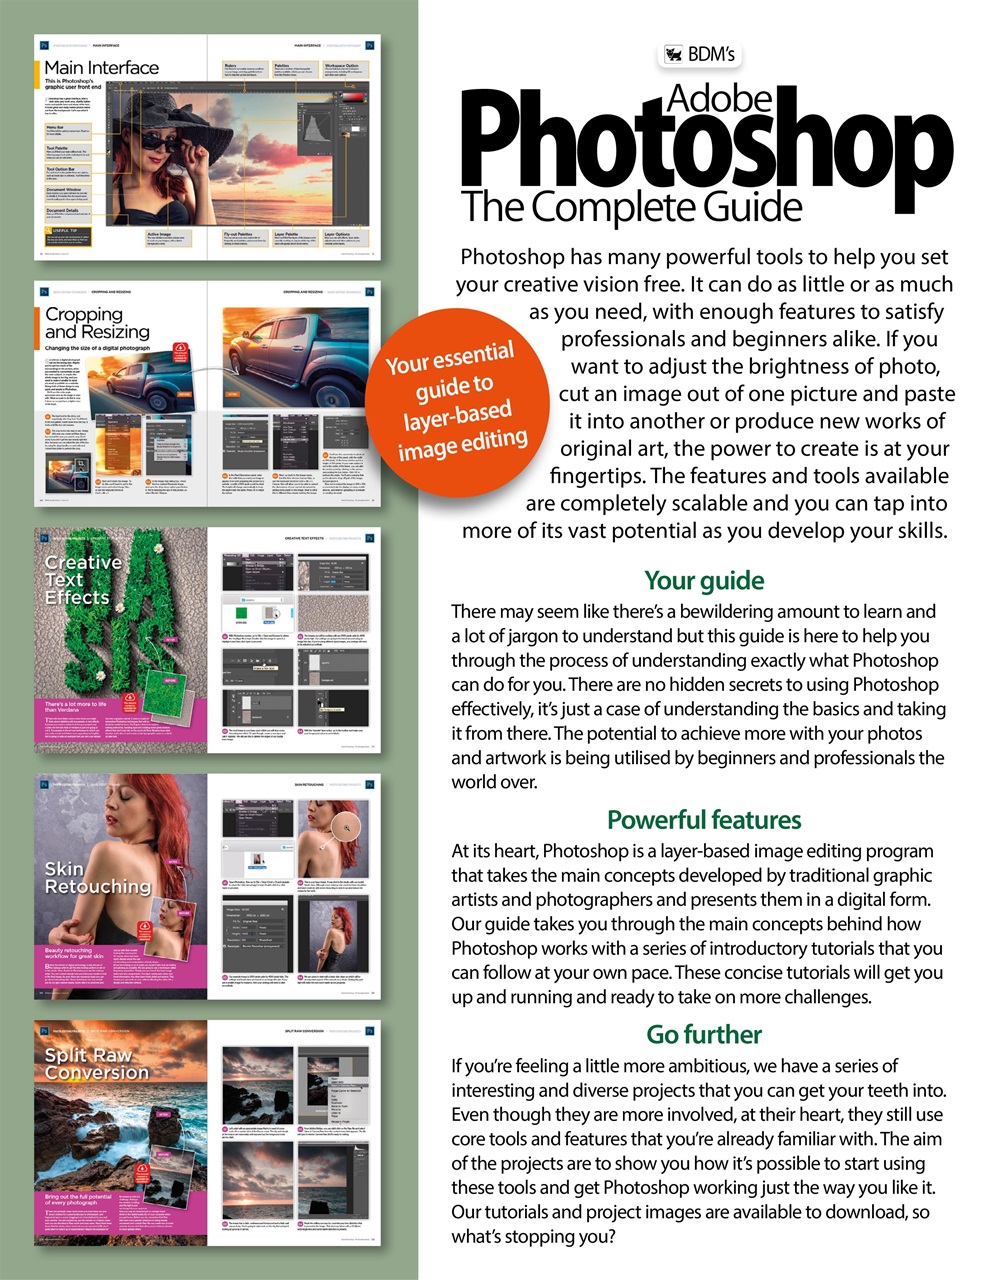 adobe photoshop 2018 user manual pdf free download